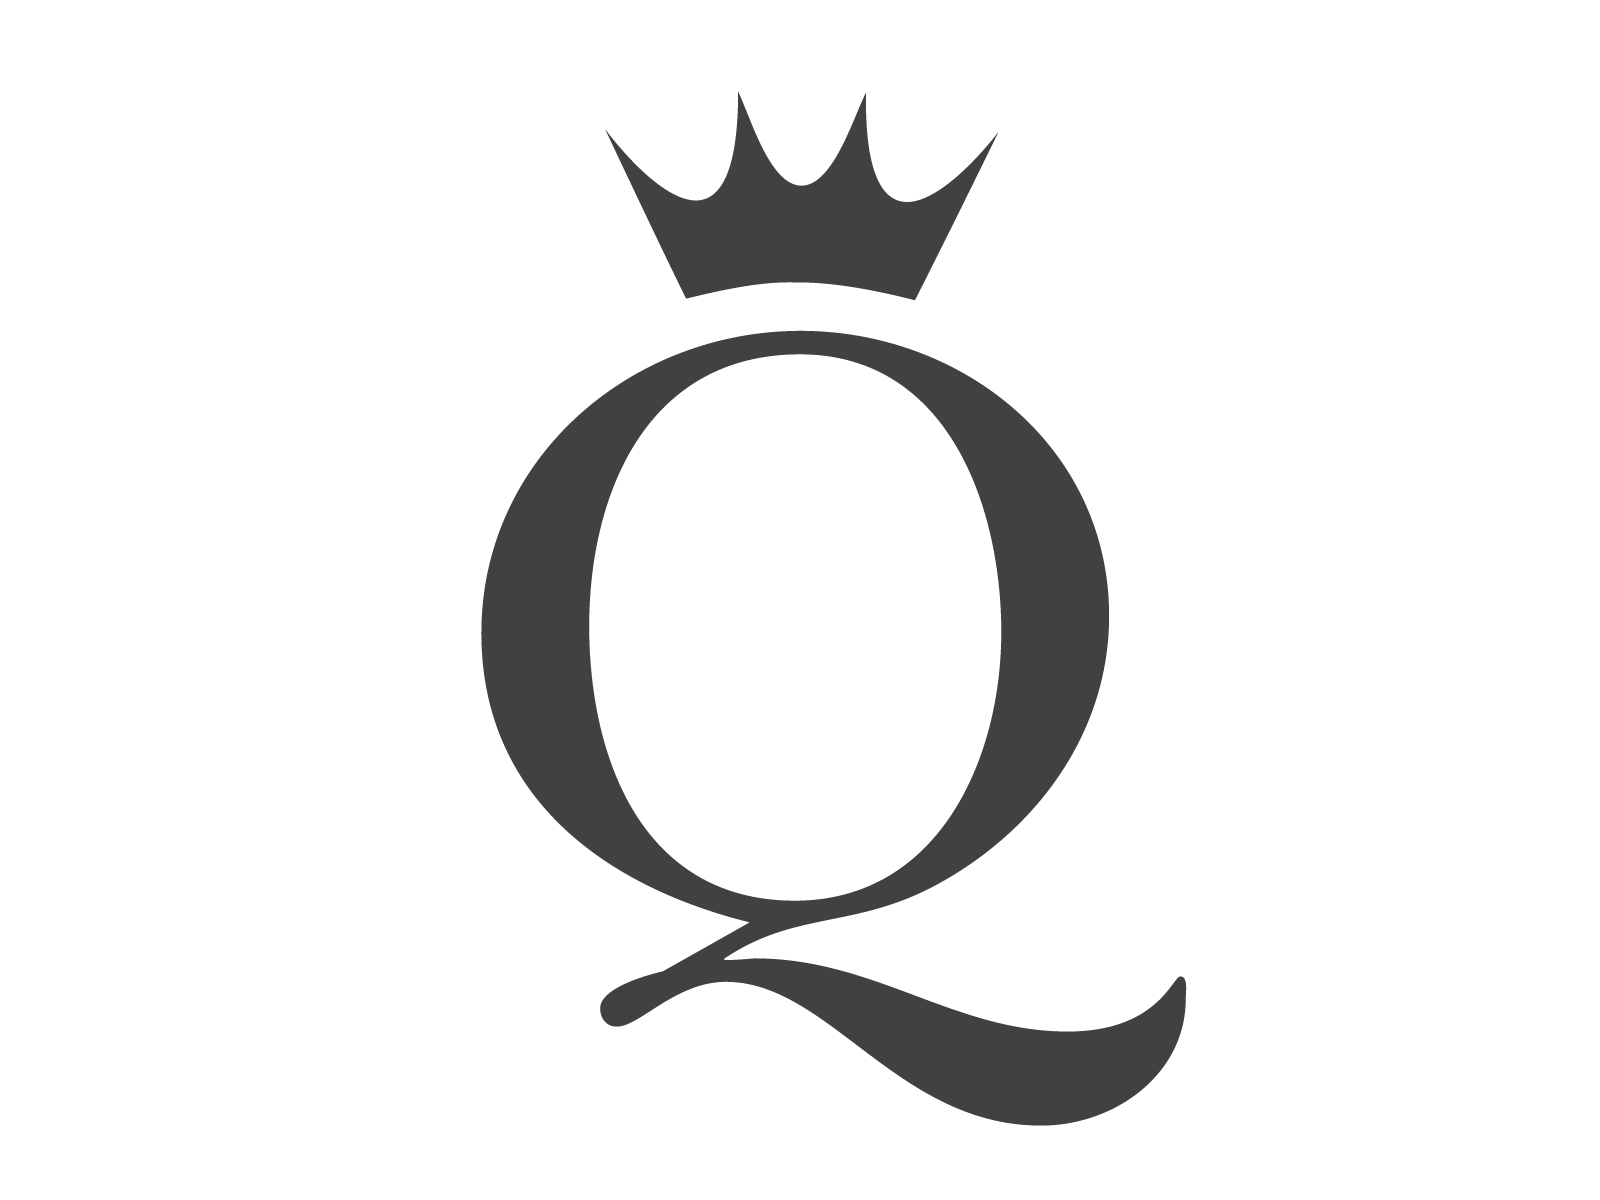 Bạn muốn thiết kế logo với cảm hứng từ chữ cái? Logo Queen Q sẽ giúp bạn thỏa mãn nhu cầu sáng tạo của mình với thiết kế chữ cái độc đáo và hợp thời trang.